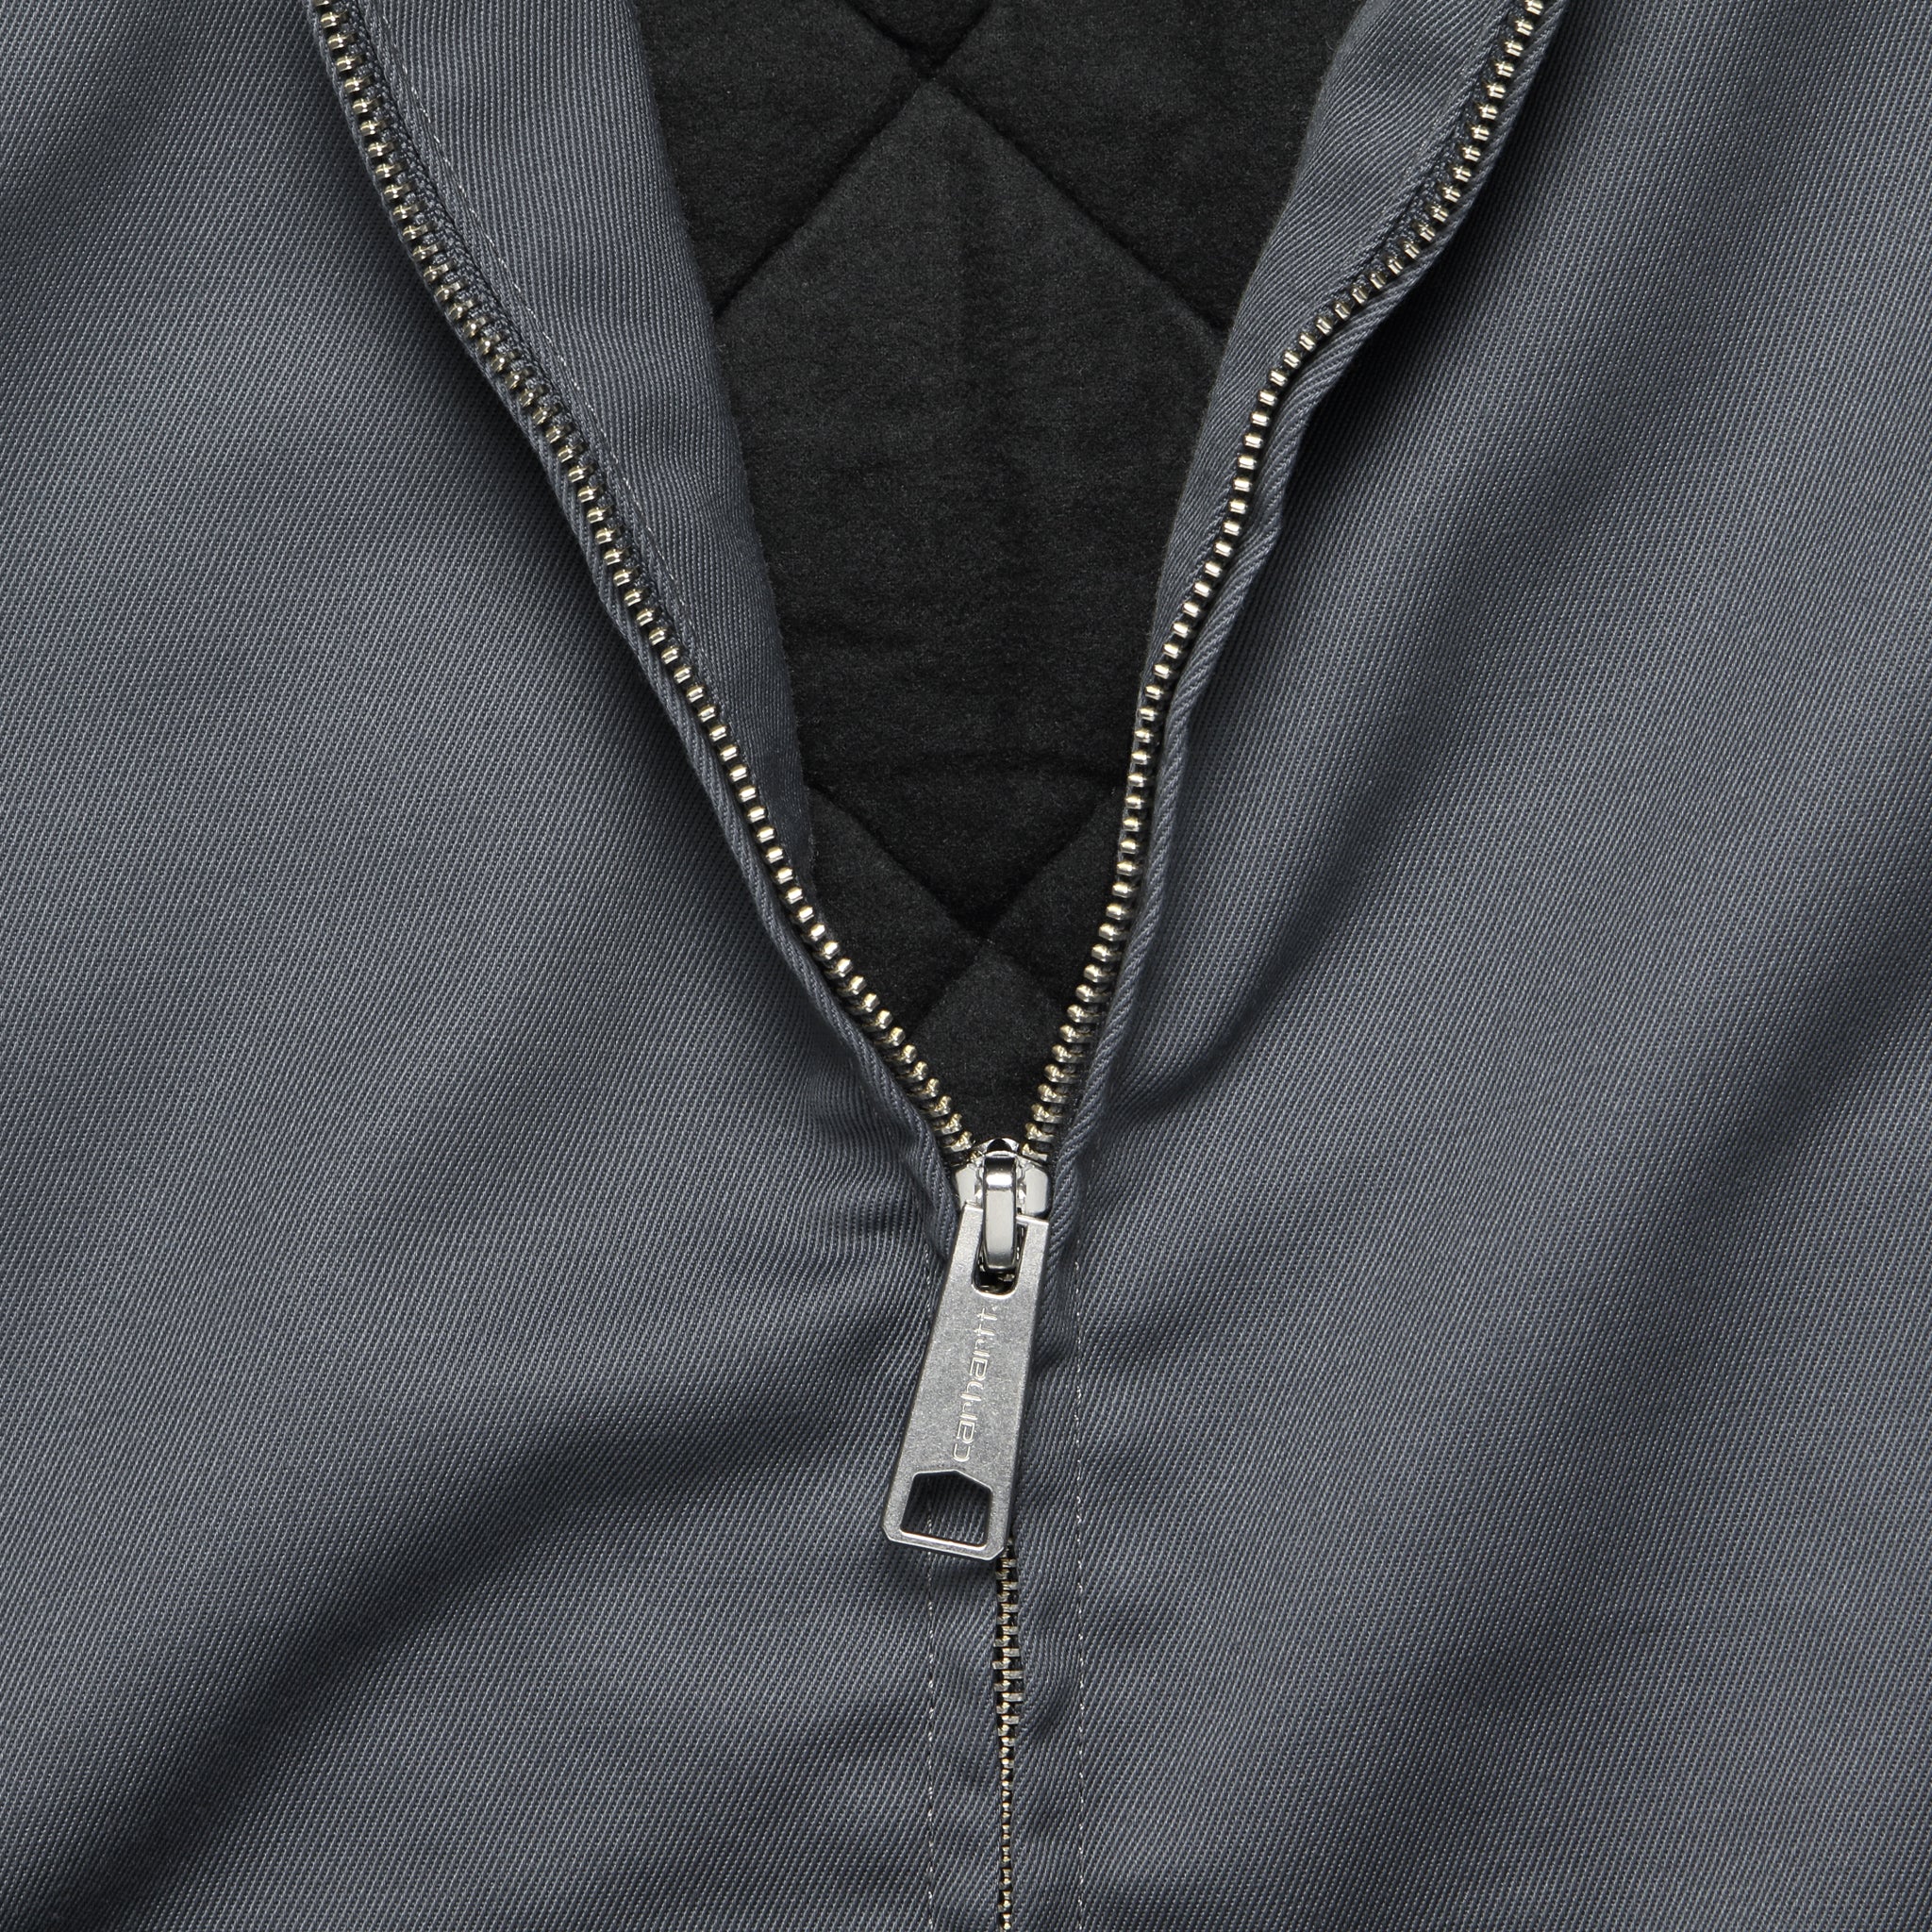 Modular Jacket - Shiver